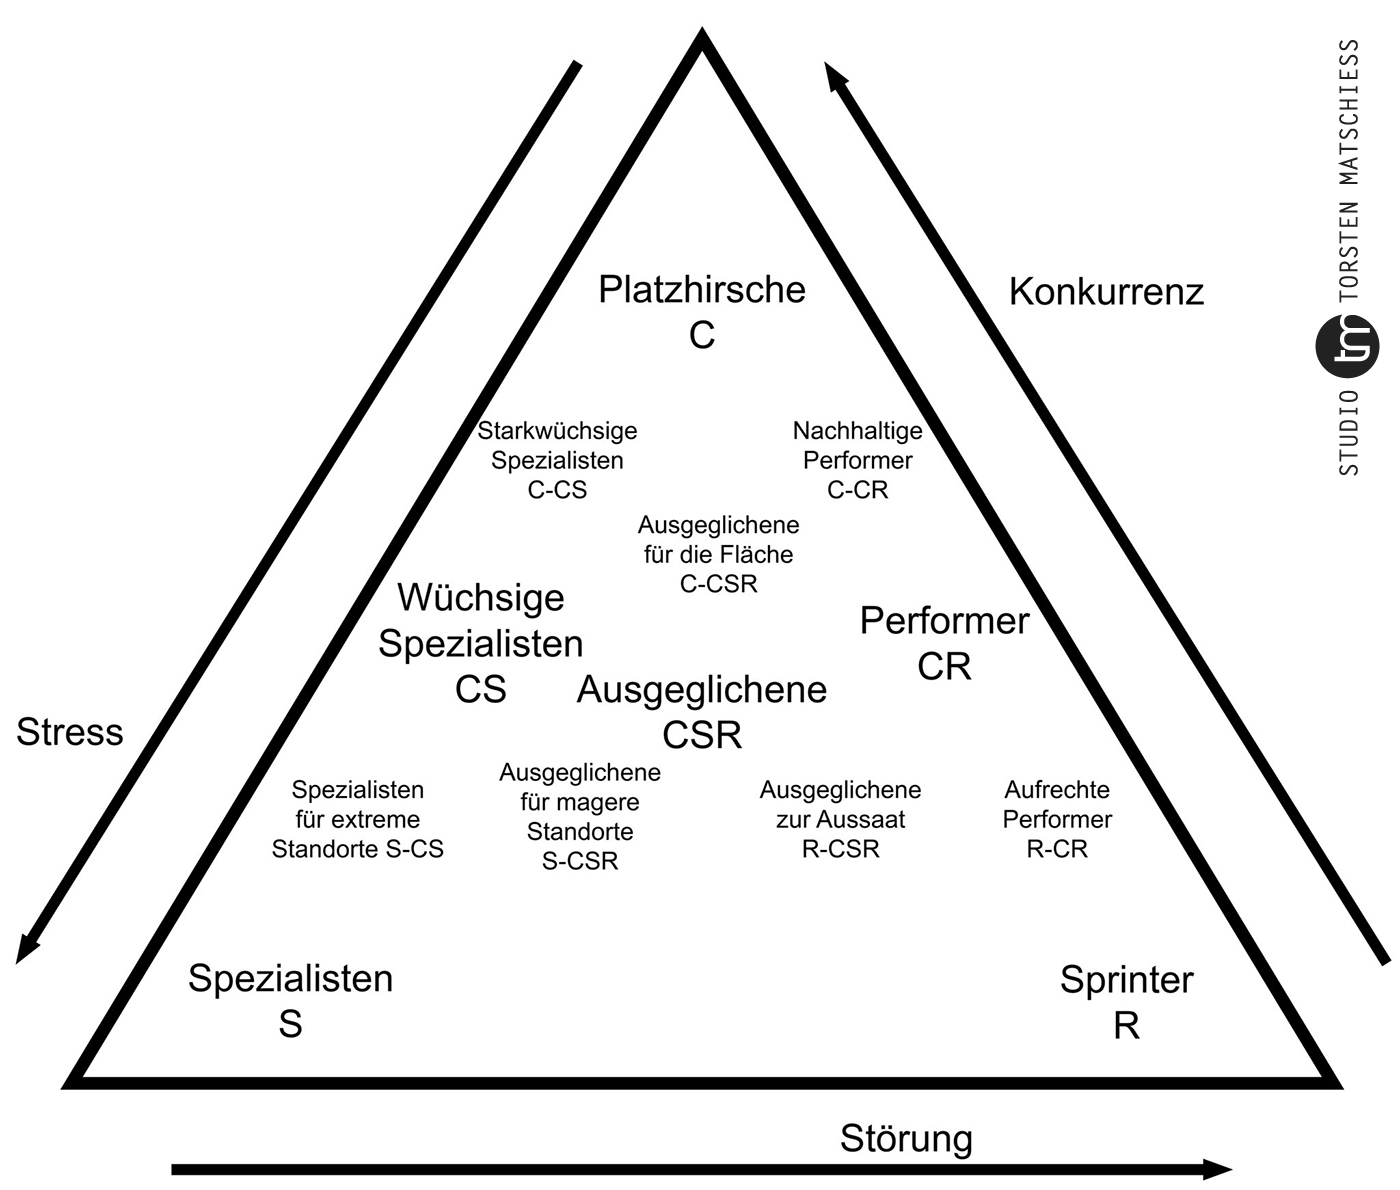 Primär- und differenzierte Mischtypen im Strategietypen-Dreieck nach Grime